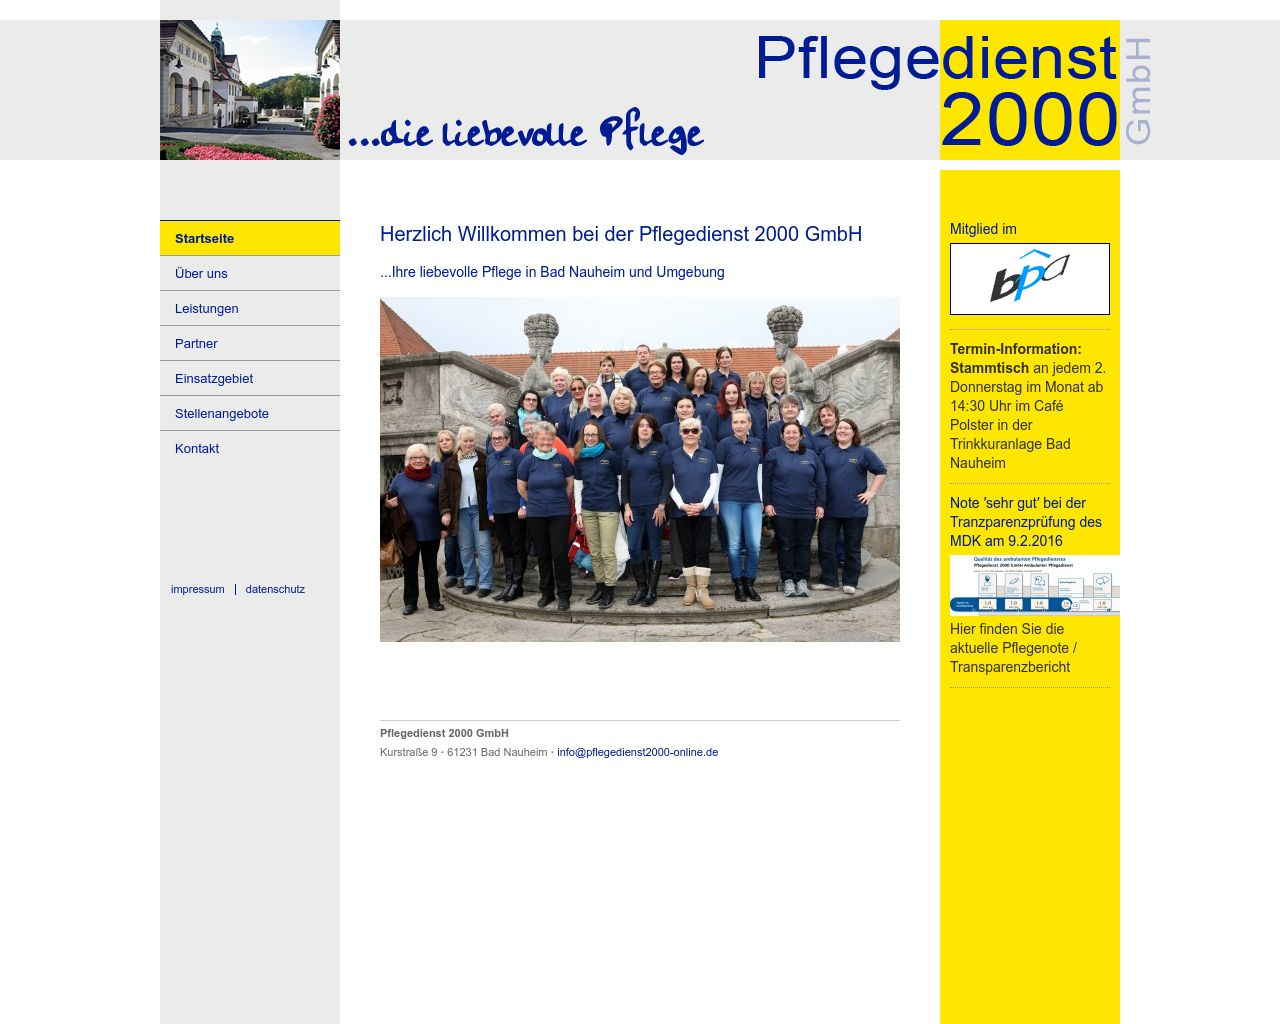 Bild Website pflegedienst2000-online.de in 1280x1024